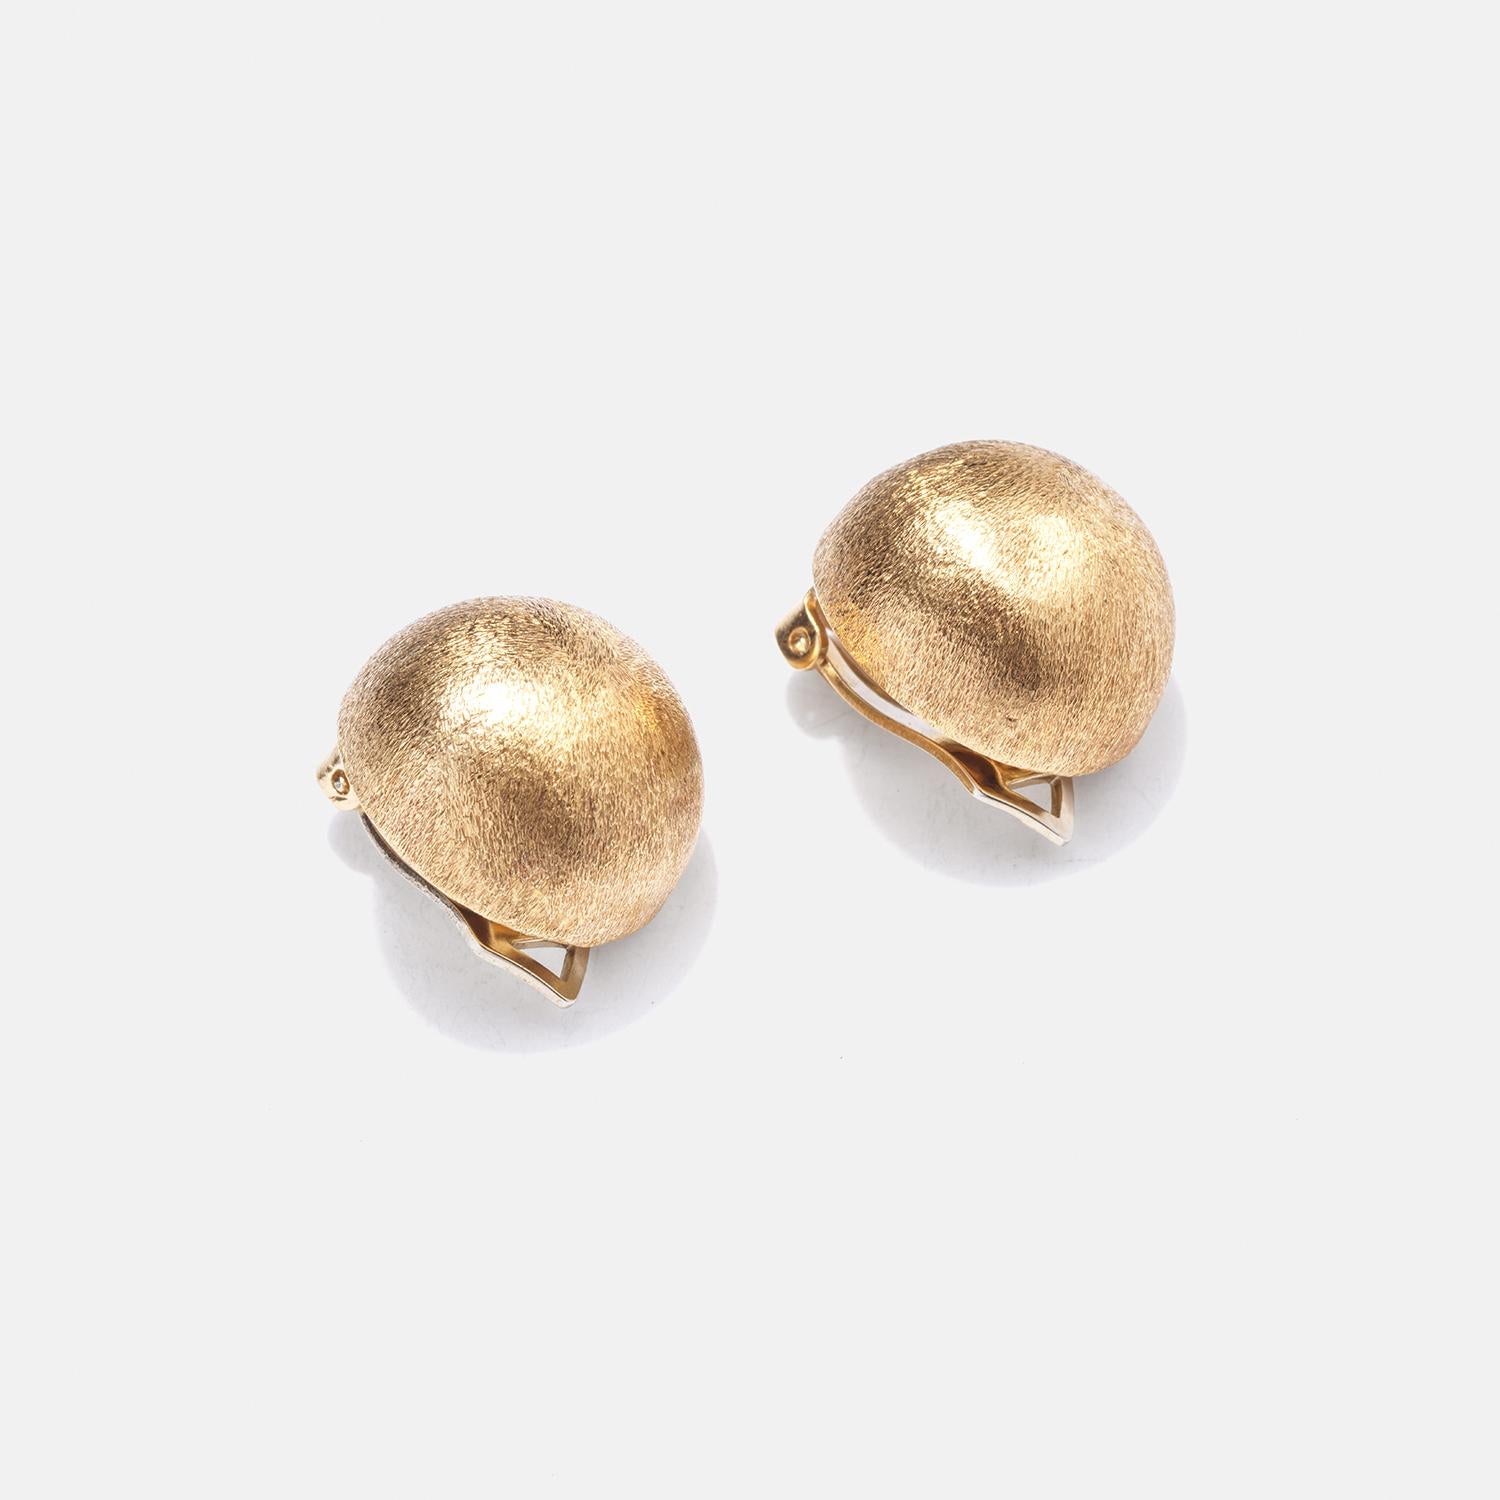 Ces boucles d'oreilles à clip en or 18 carats présentent une forme de dôme distinctive, présentant une forme volumétrique subtile mais attrayante. Leur surface est finie avec une texture mate et brossée qui adoucit l'éclat naturel de l'or, ajoutant